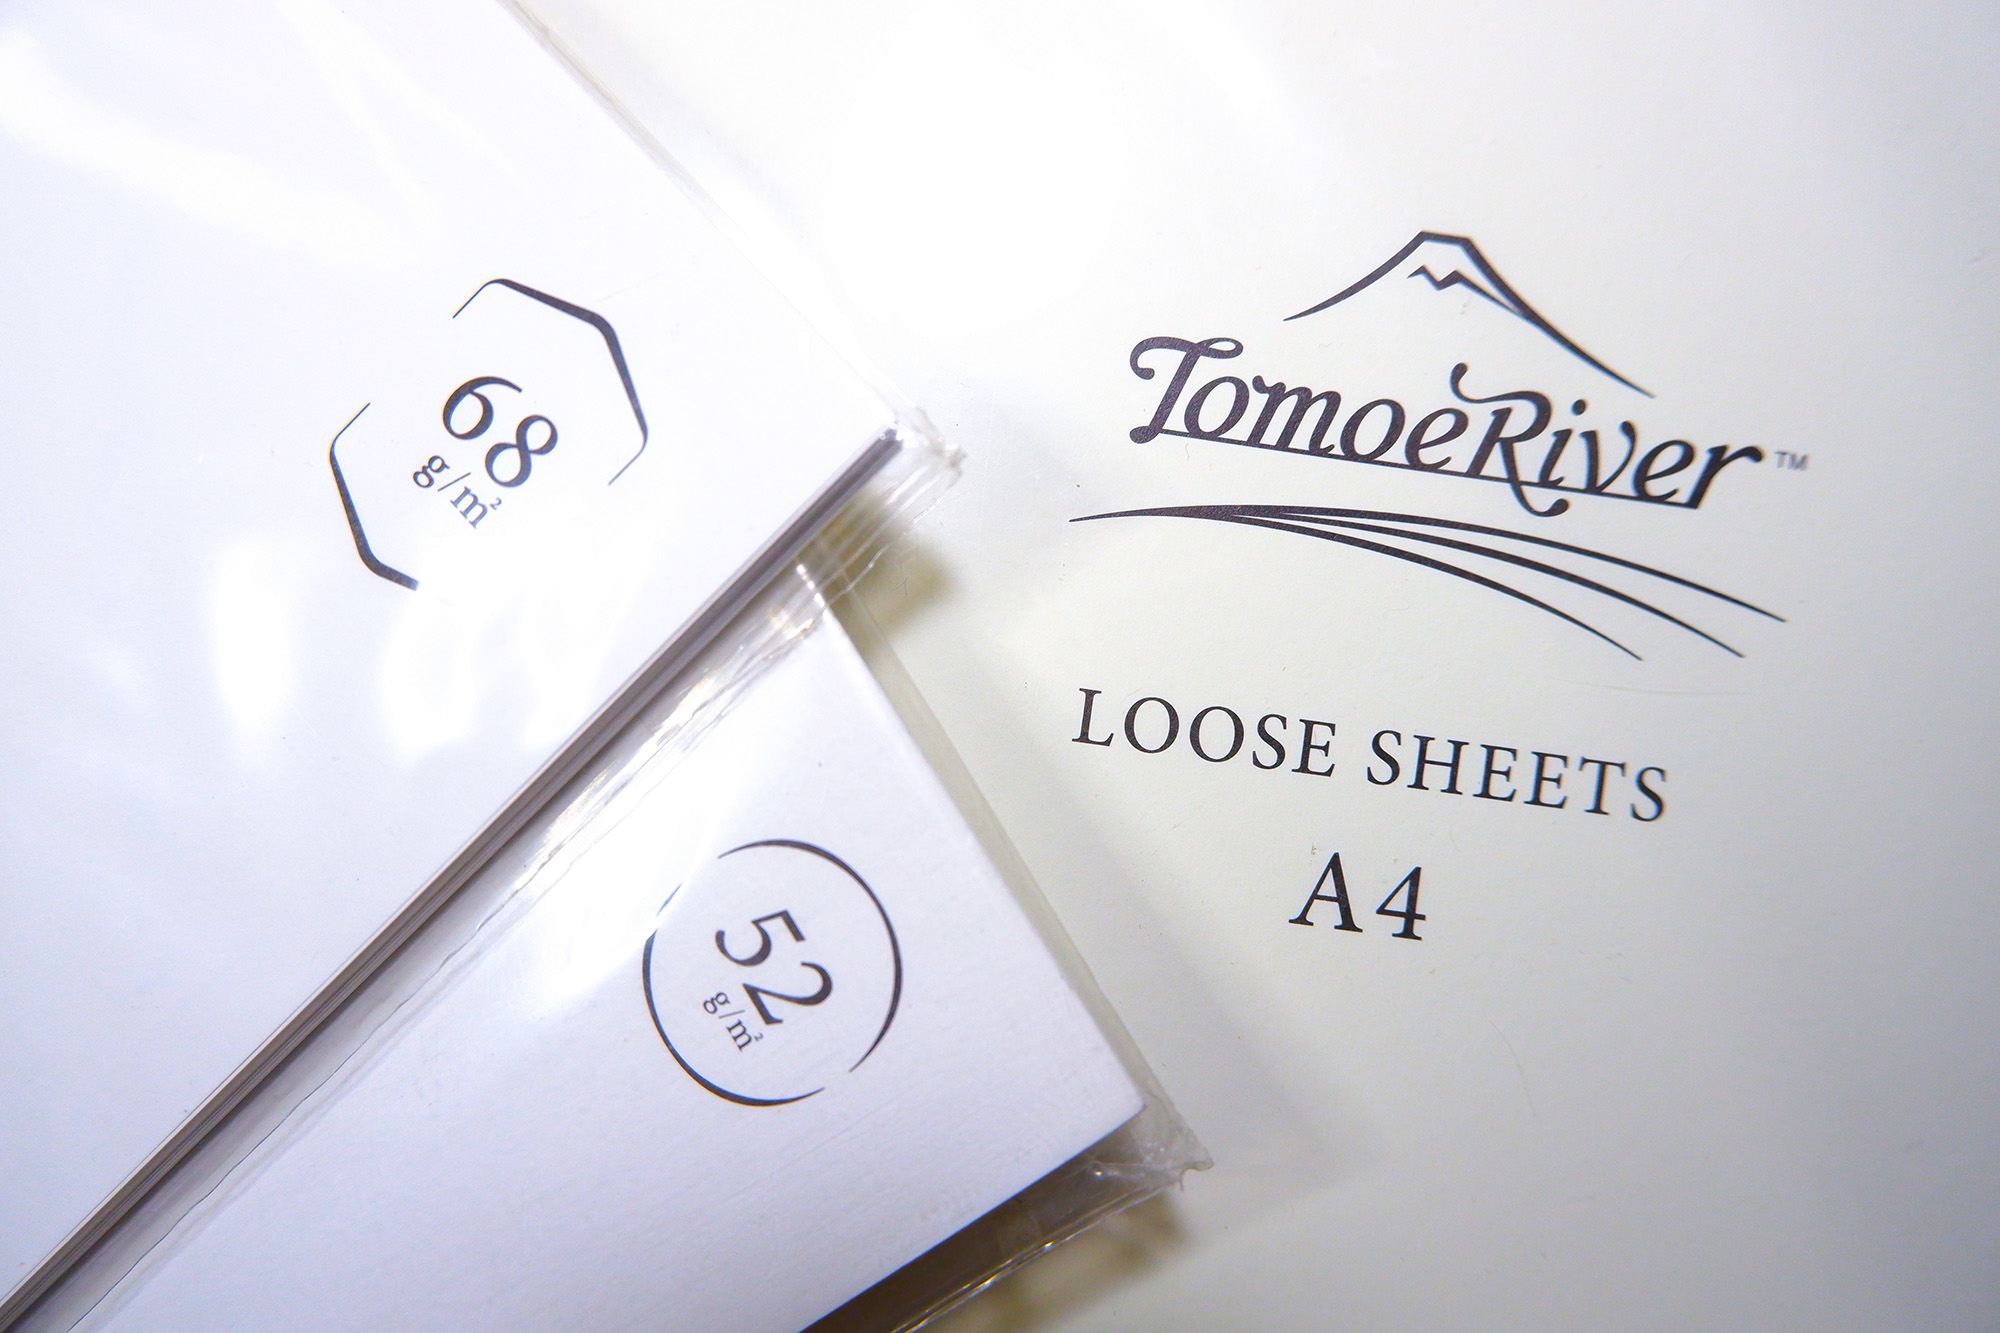 Tomoe River Paper